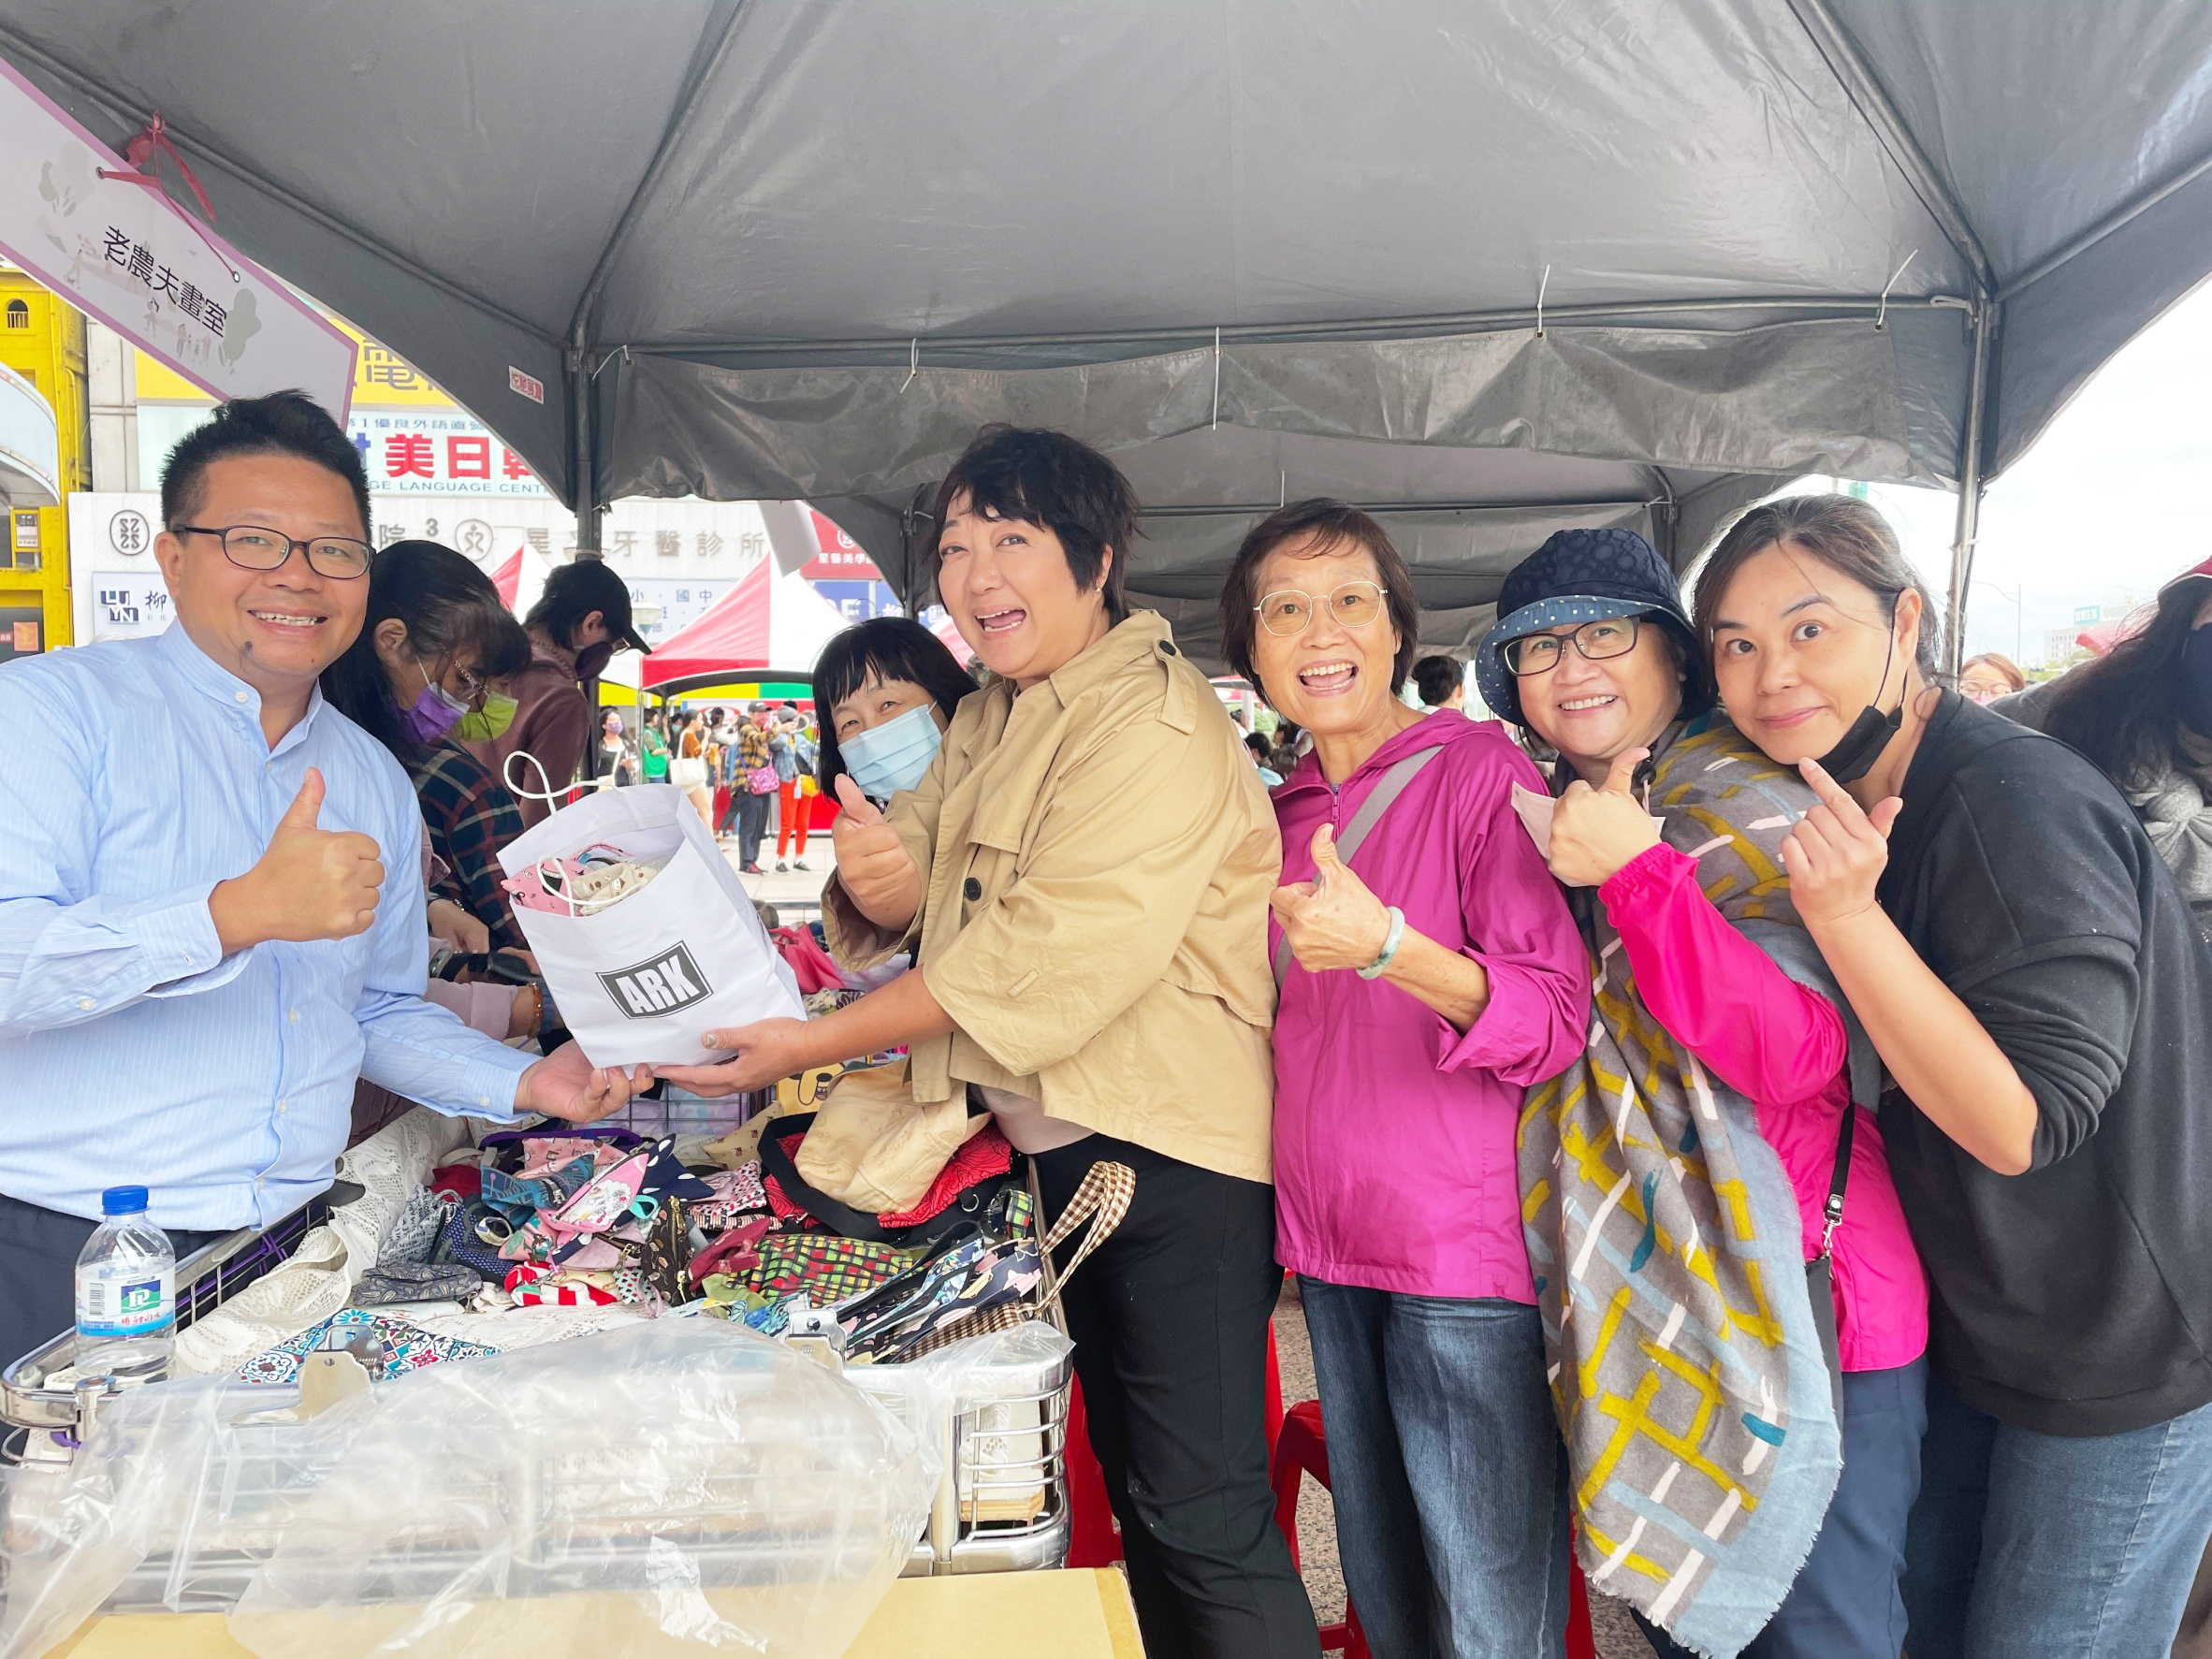 義 賣 活 動 志 工 手 工 編 造 具 有 台 灣 特 色 的 袋 子 與 零 錢 包 ， 讓 人 愛 不 釋 手 ， 充 分 展 現 民 眾 的 愛 心 ！ 